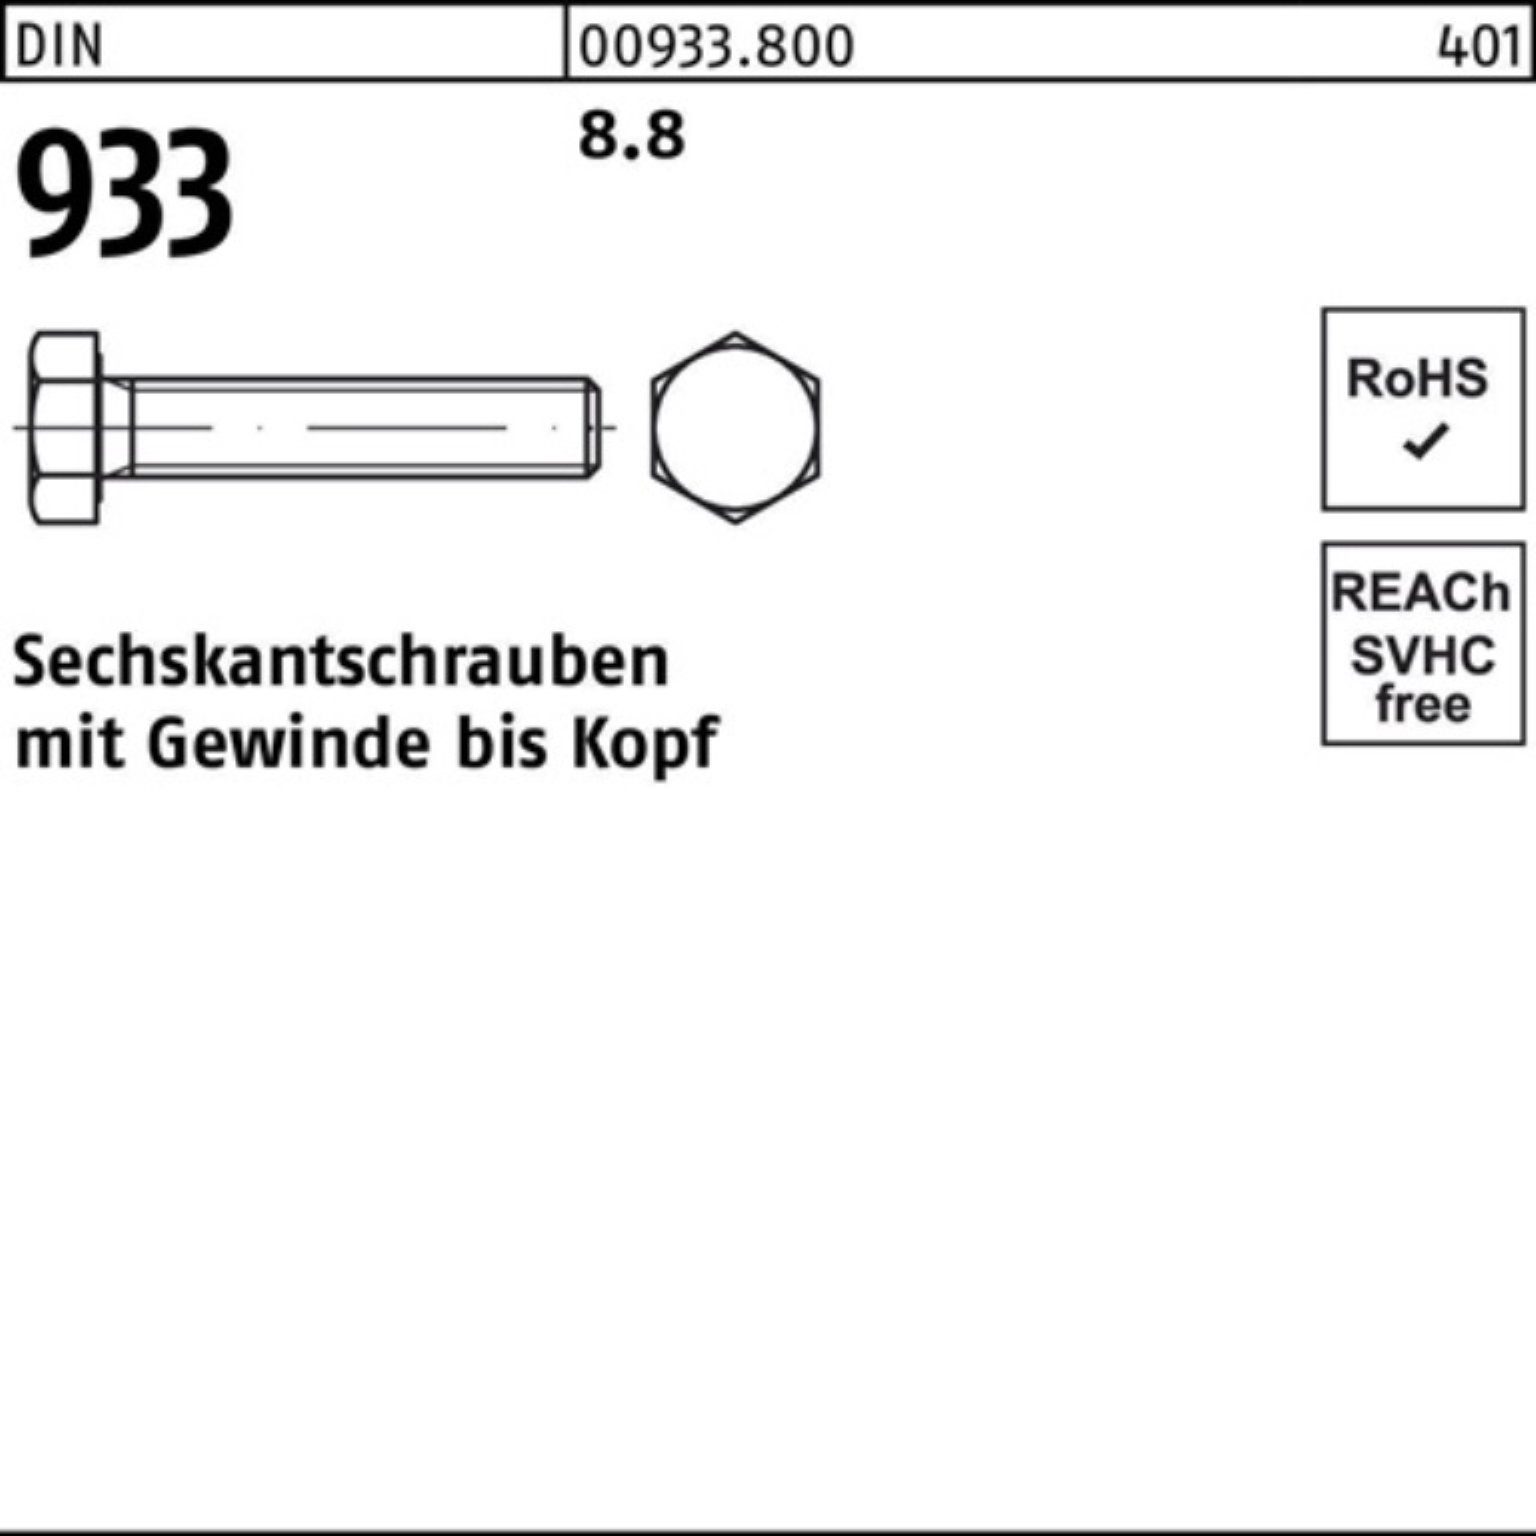 M14x Sechskantschraube Sechskantschraube 8.8 45 100er DIN VG Pack Reyher 933 100 933 Stück DIN